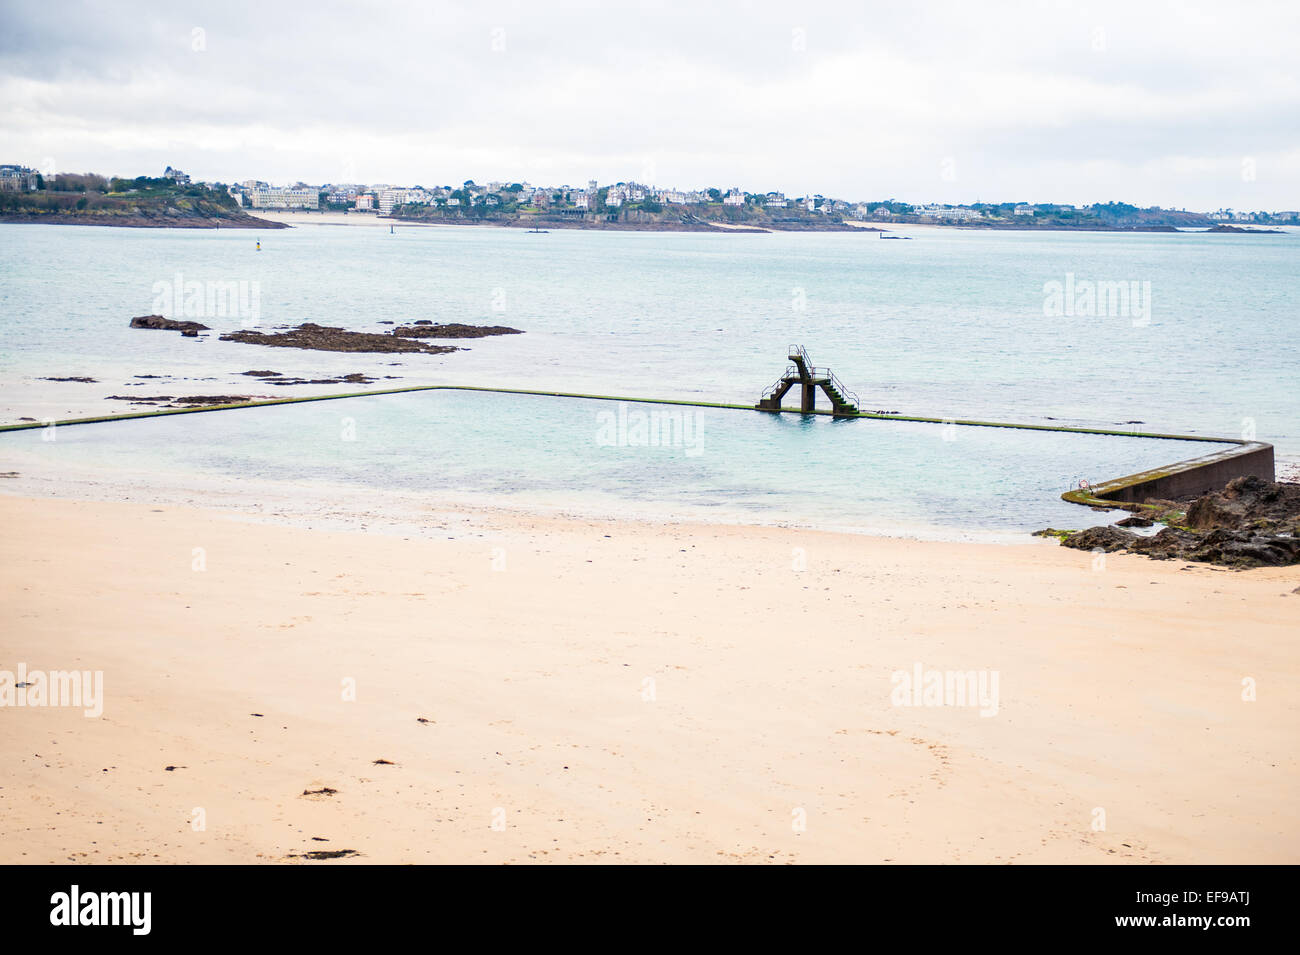 Open air piscine d'eau de mer sur la plage de Bon Secours, en face de la ville fortifiée de Saint Malo, Ille-et-Vilaine, Bretagne, Fran Banque D'Images